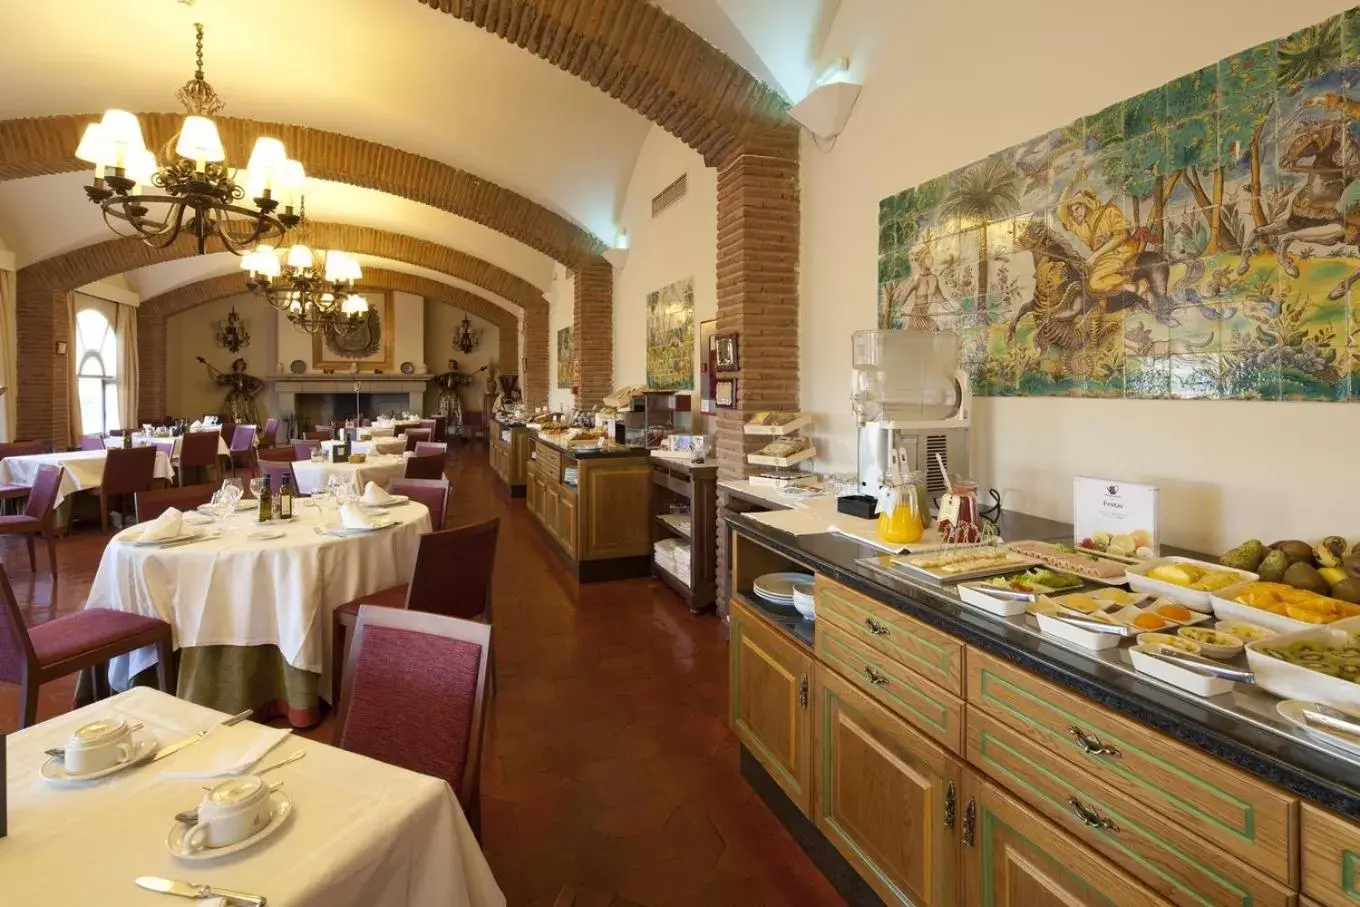 Breakfast, Restaurant/Places to Eat in Parador de Benavente